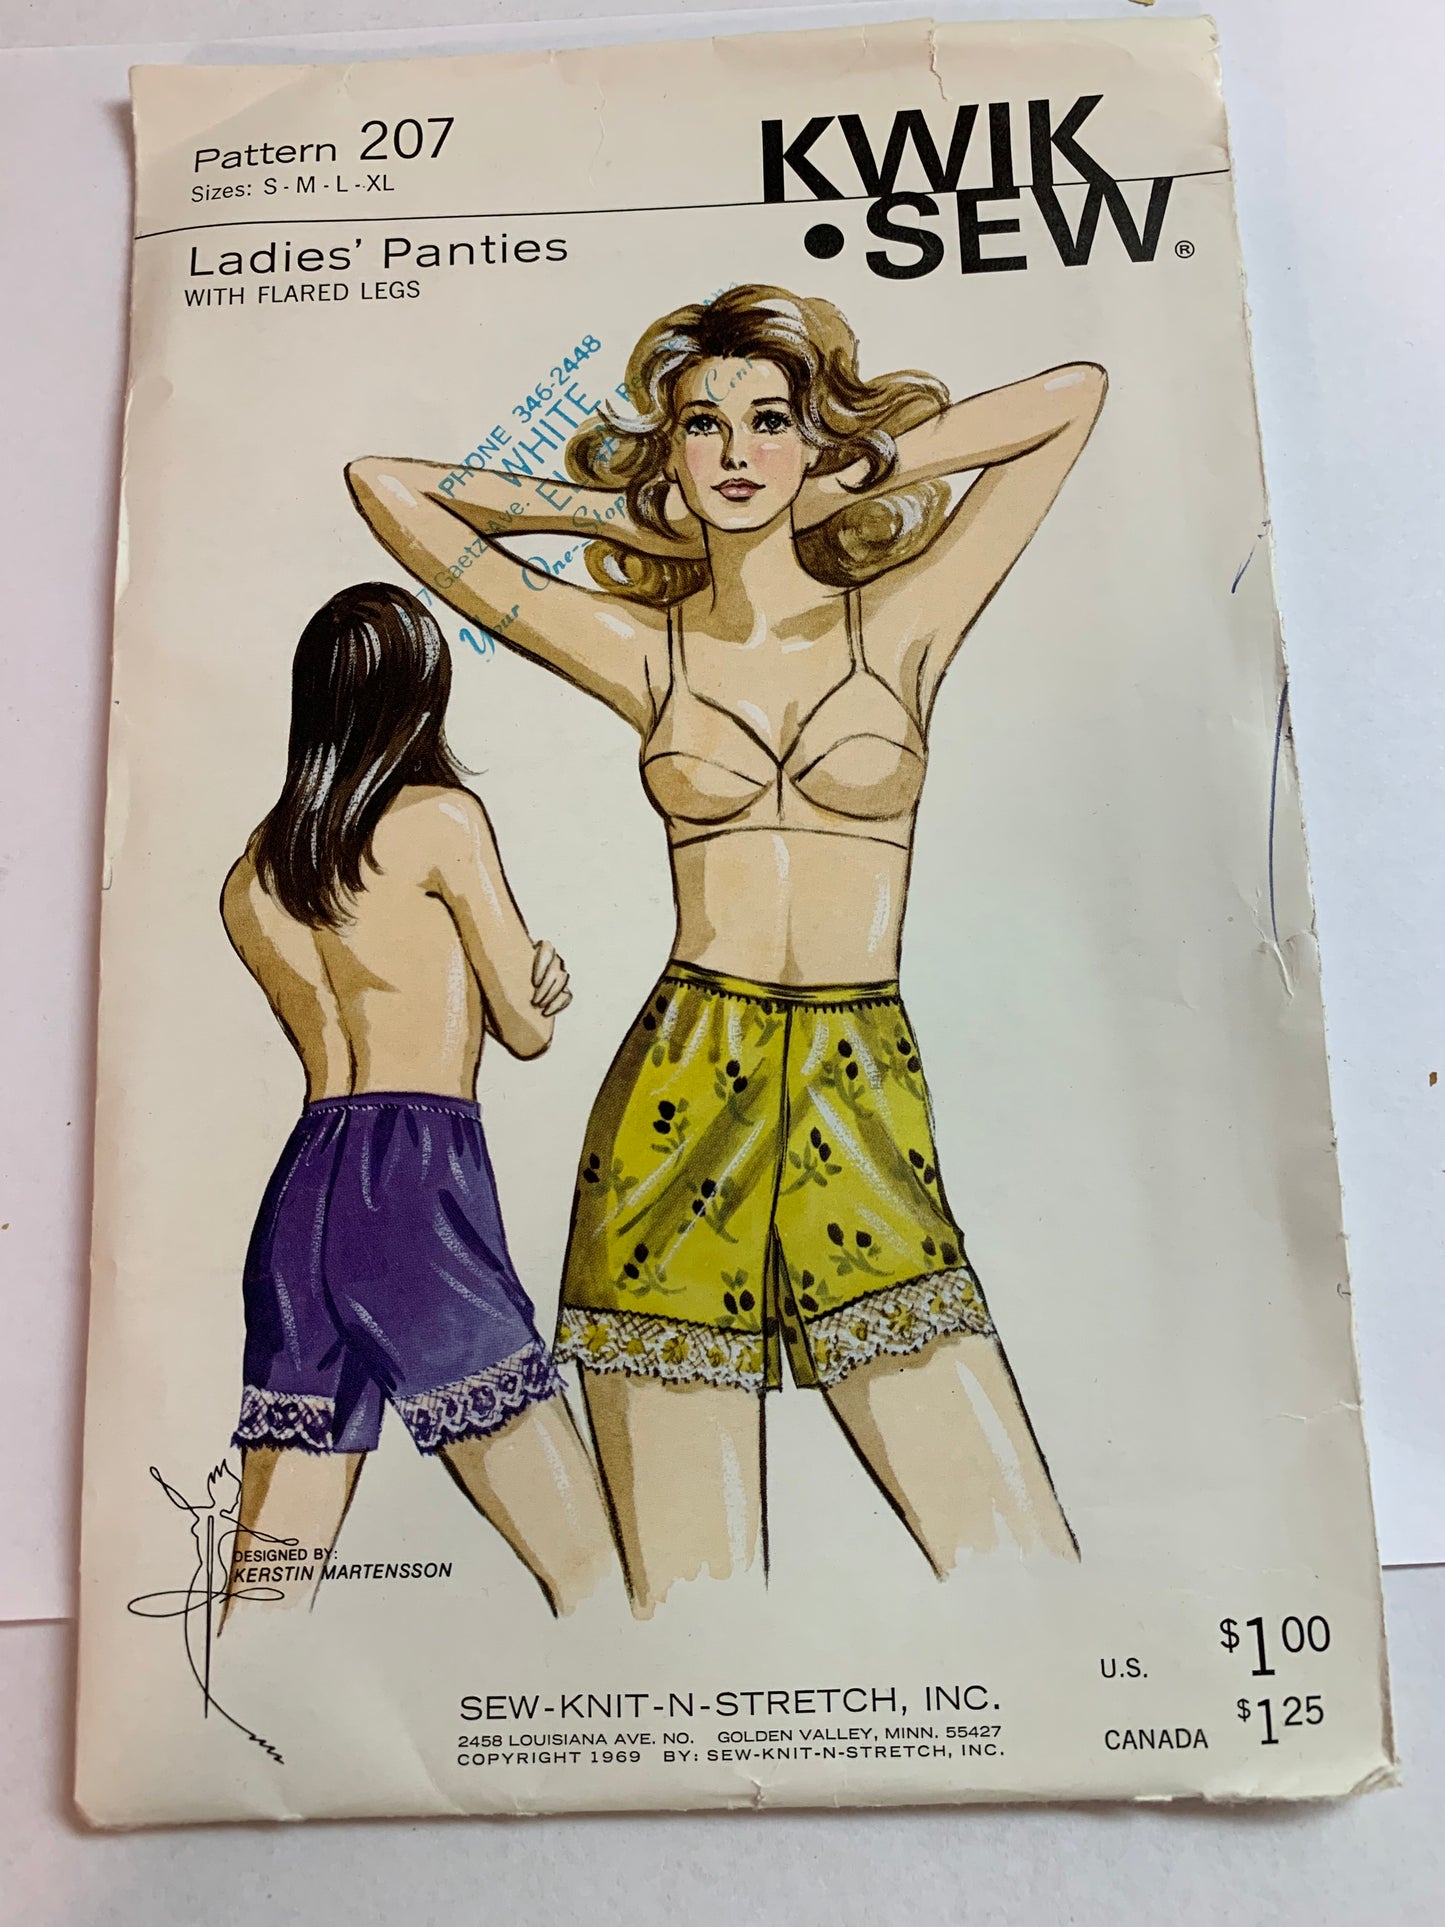 KWIK Sewing Pattern 207 Misses' Ladies Panties, Flared Legs